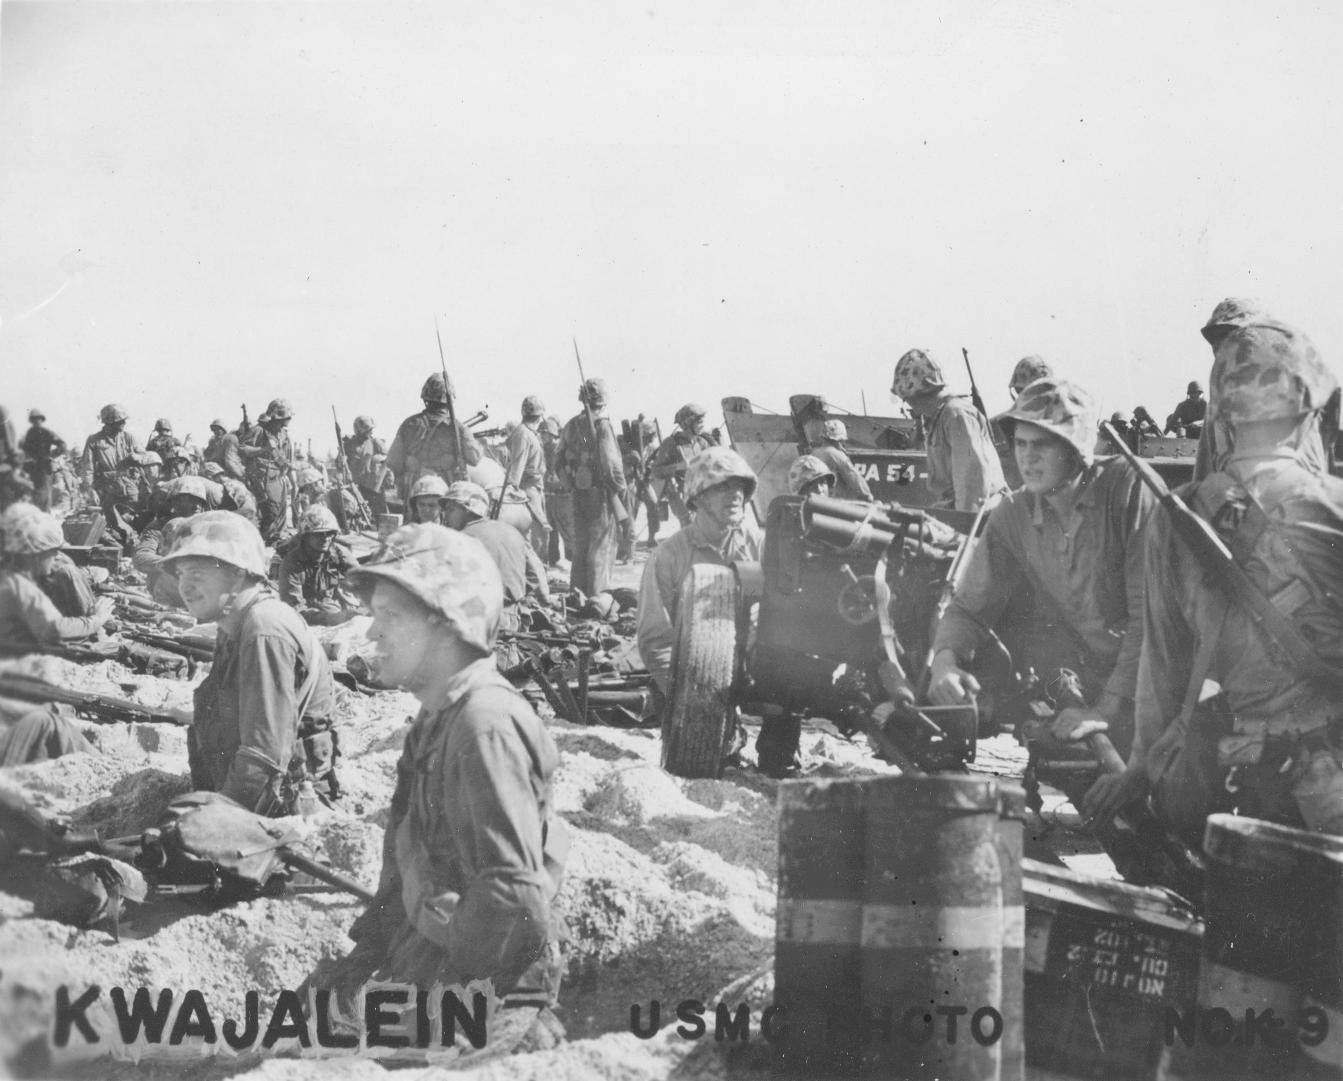 US Marines on a beach on Kwajalein, Marshall Islands, 1 Feb 1944